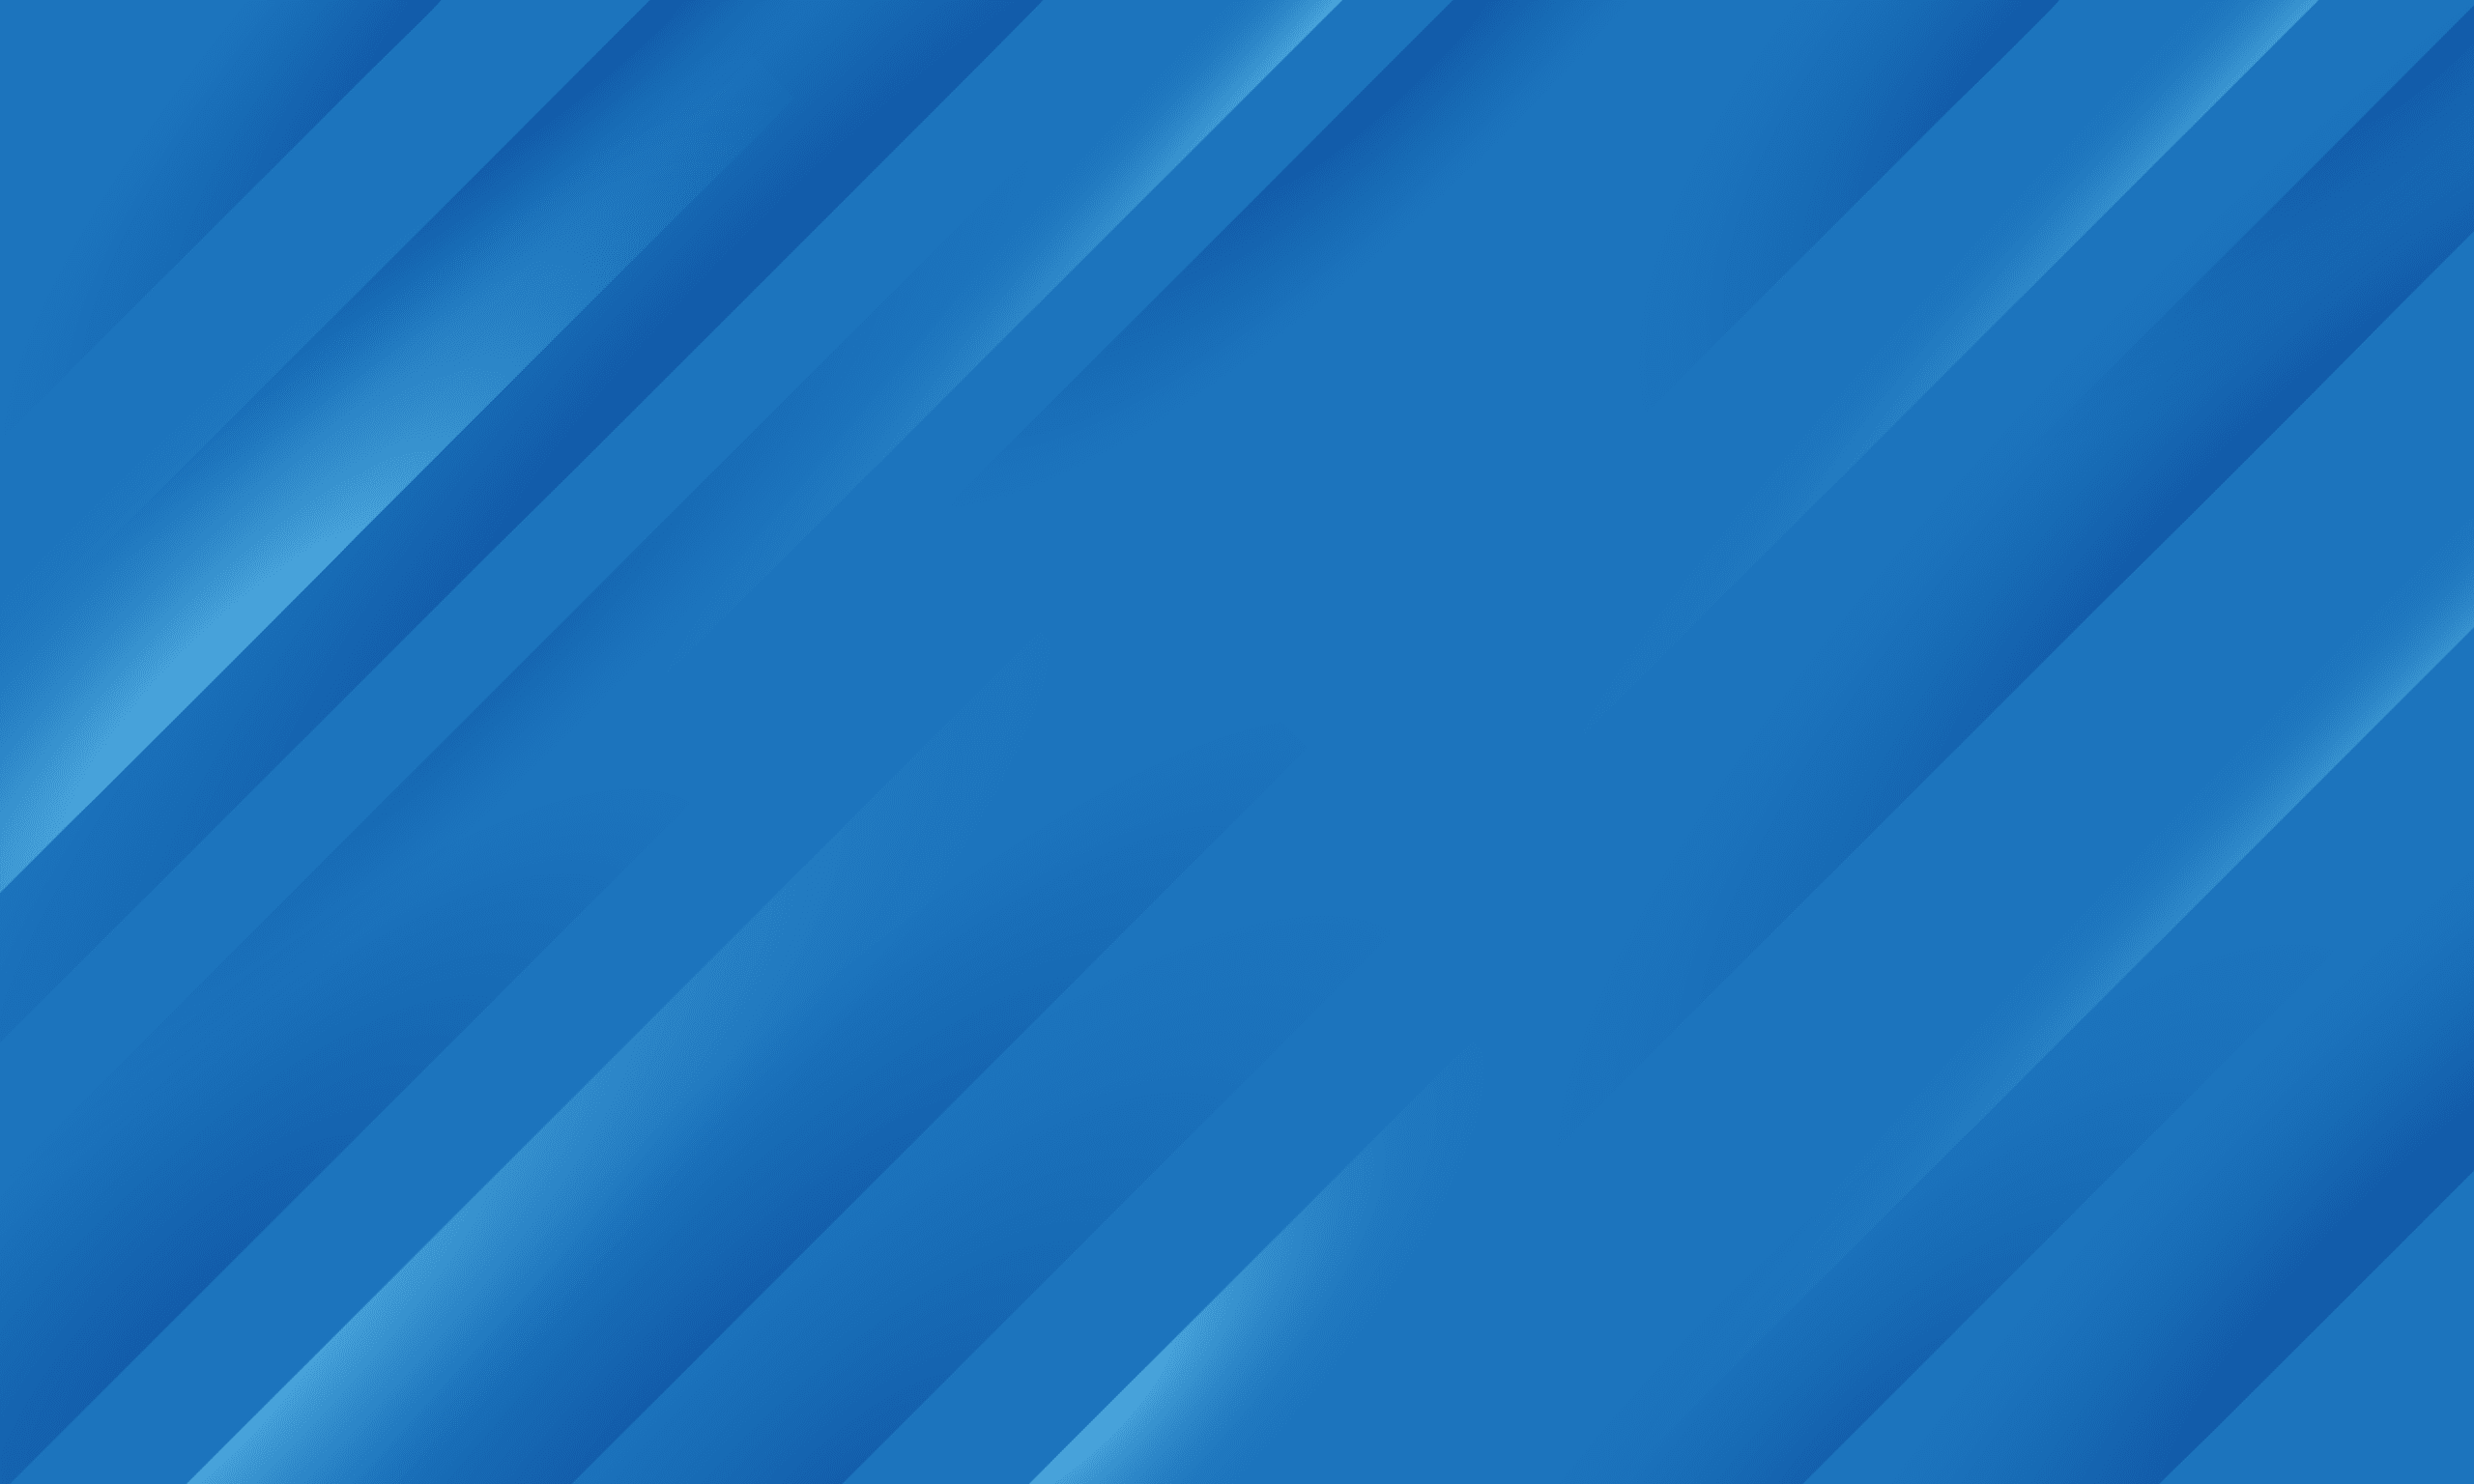 Xterra blue diagonal stripes pattern.